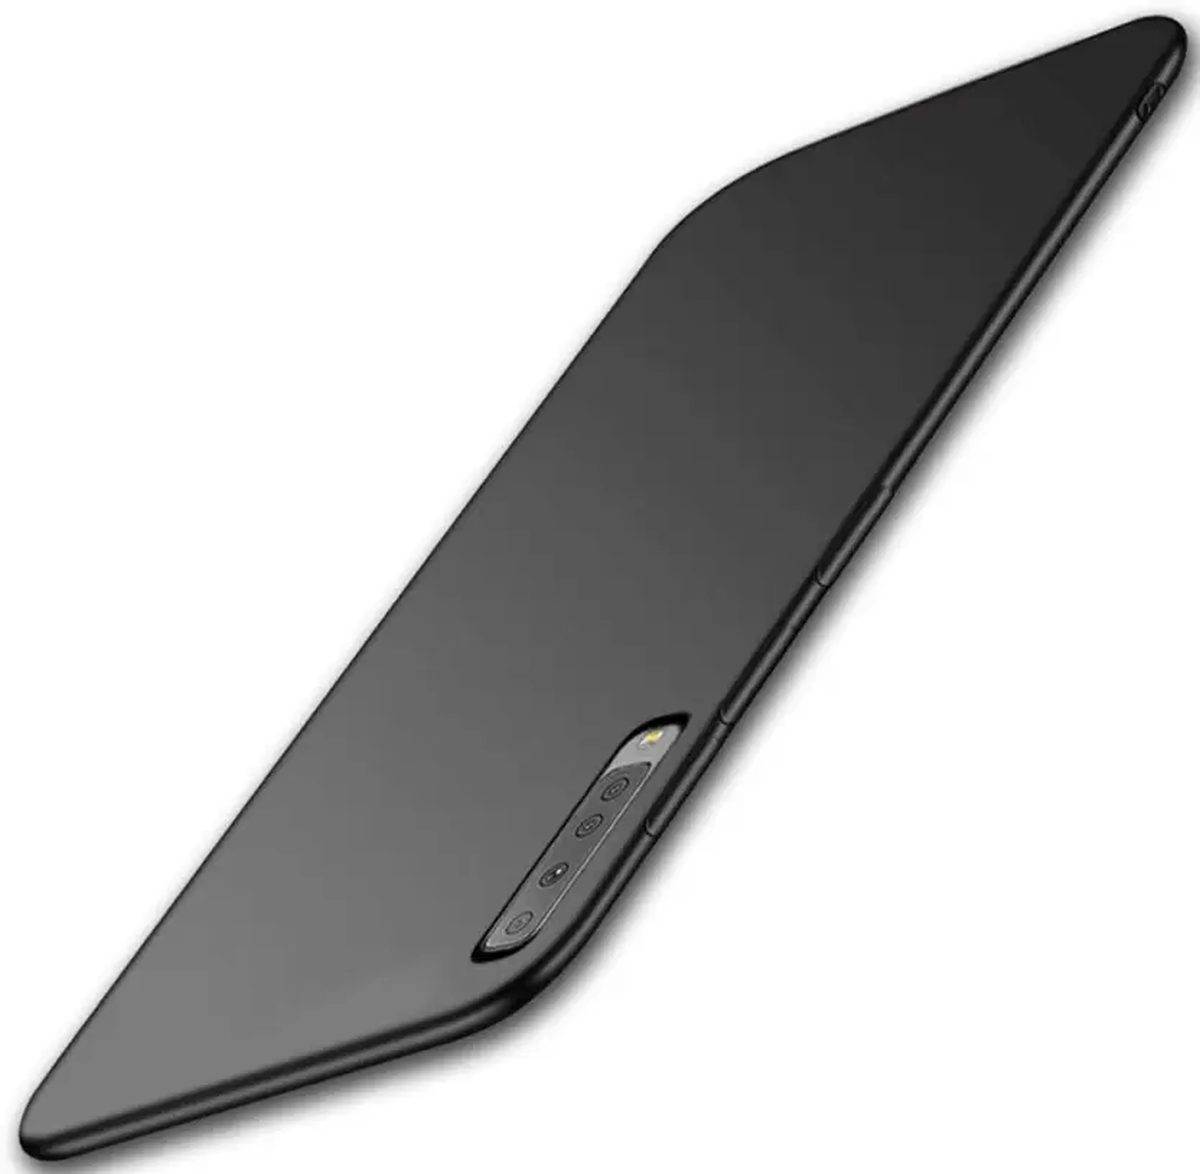 Samsung Galaxy A9 slim case